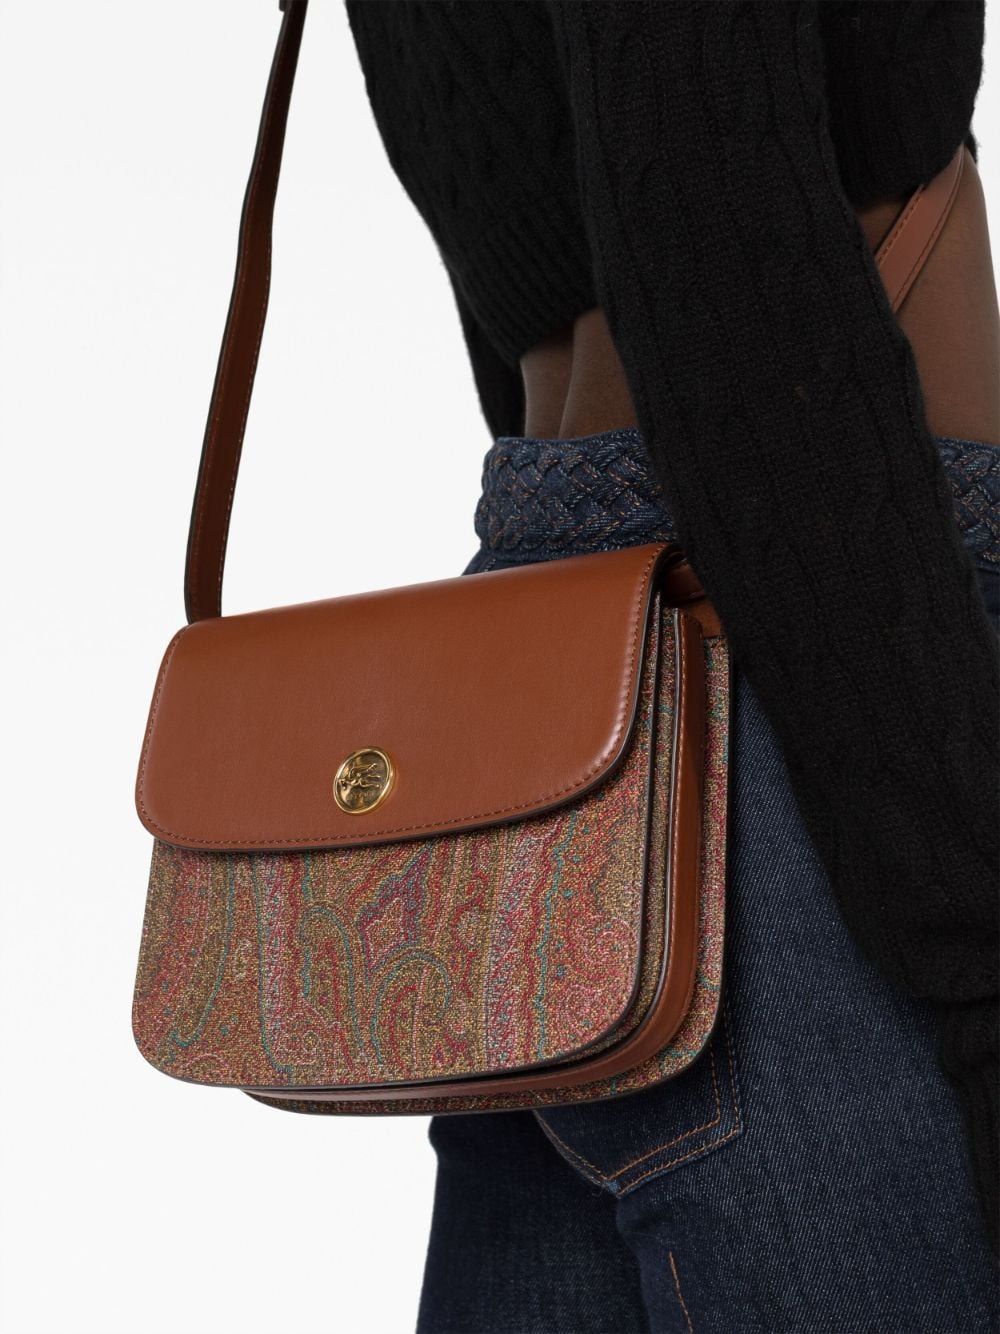 Túi xách túi gối chéo họa tiết Paisley sang trọng cho phụ nữ - bộ sưu tập FW23